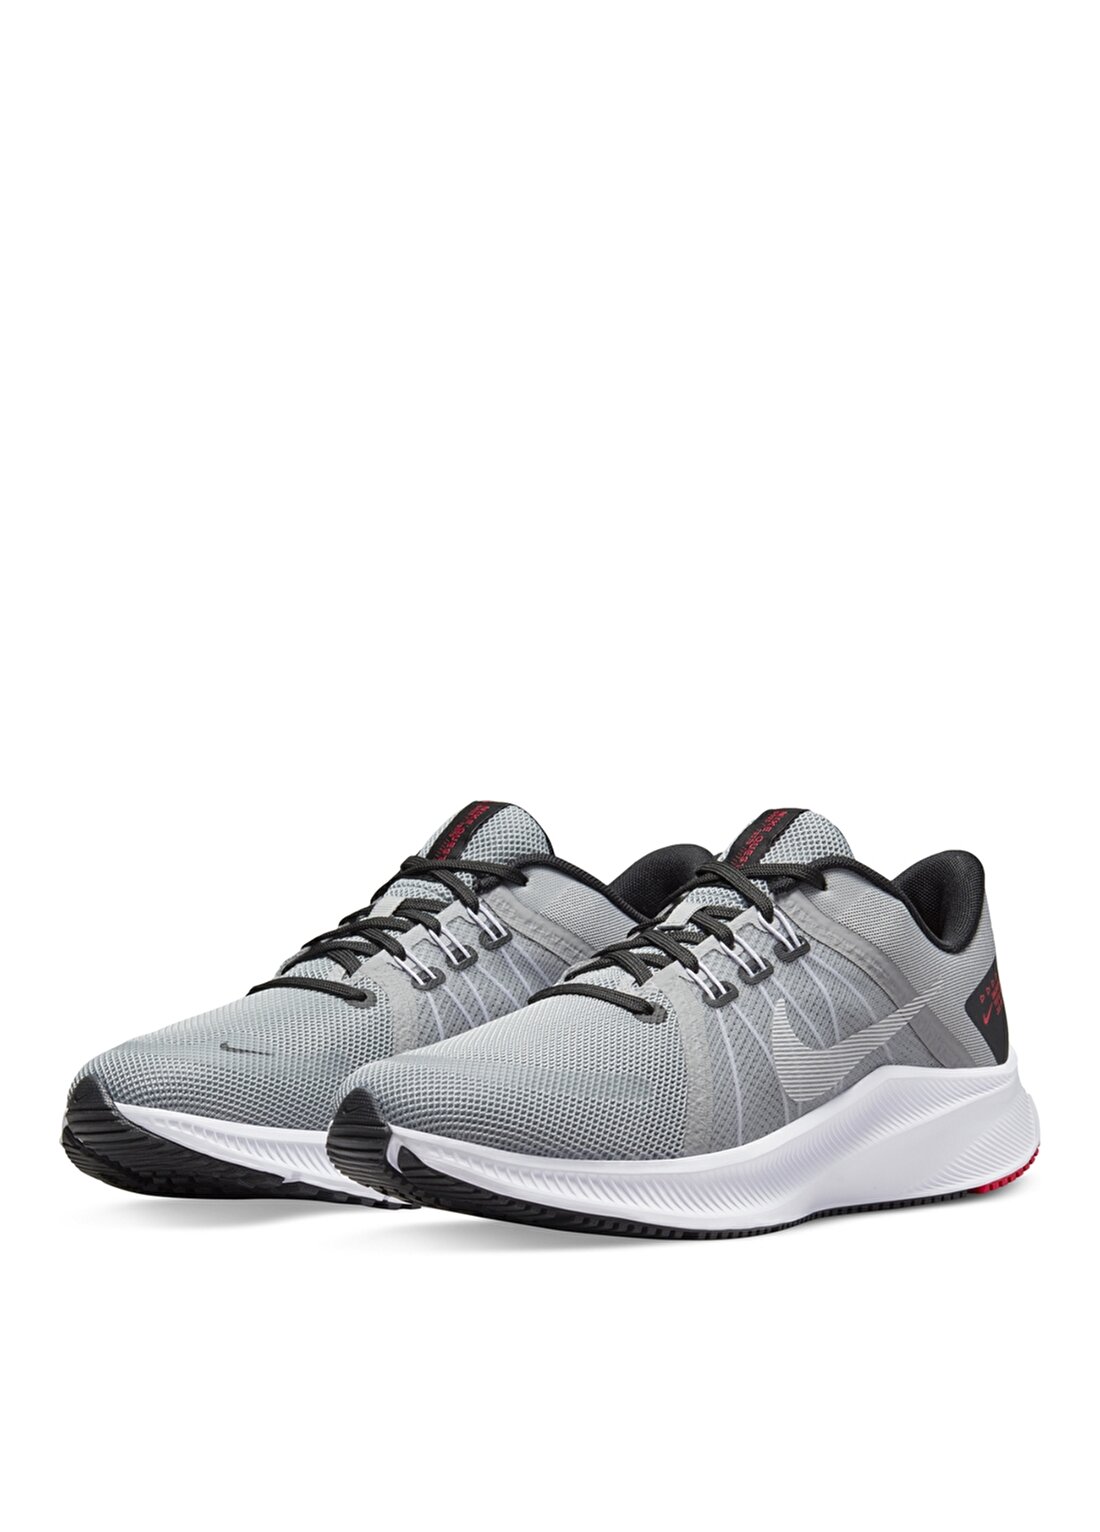 Nike Gri - Siyah - Beyaz Erkek Koşu Ayakkabısı DA1105-007 NIKE QUEST 4